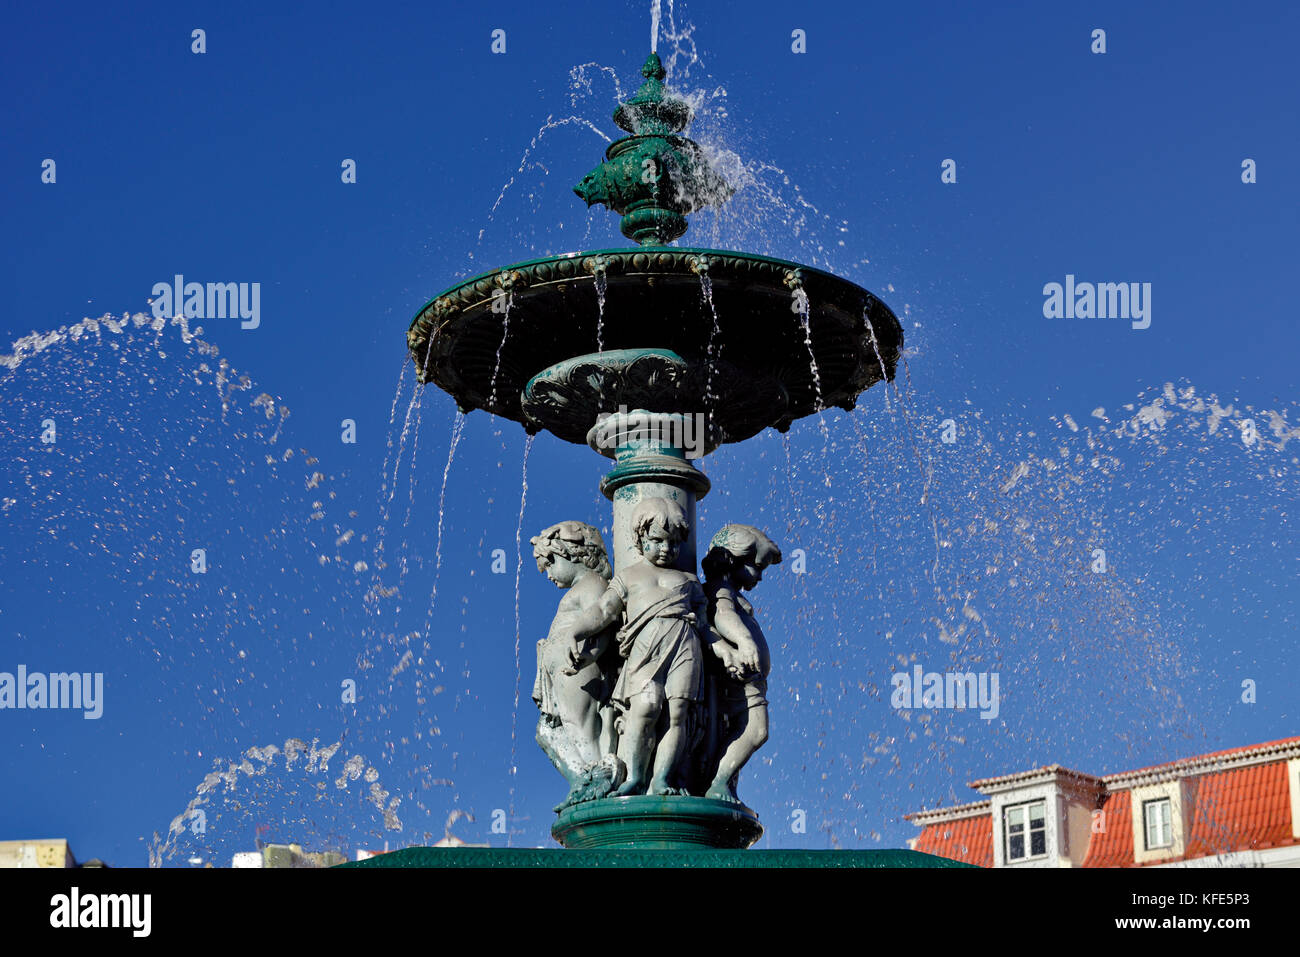 Romantisches Brunnendetail mit Wasser, das sich am blauen Himmel ausbreitet Stockfoto